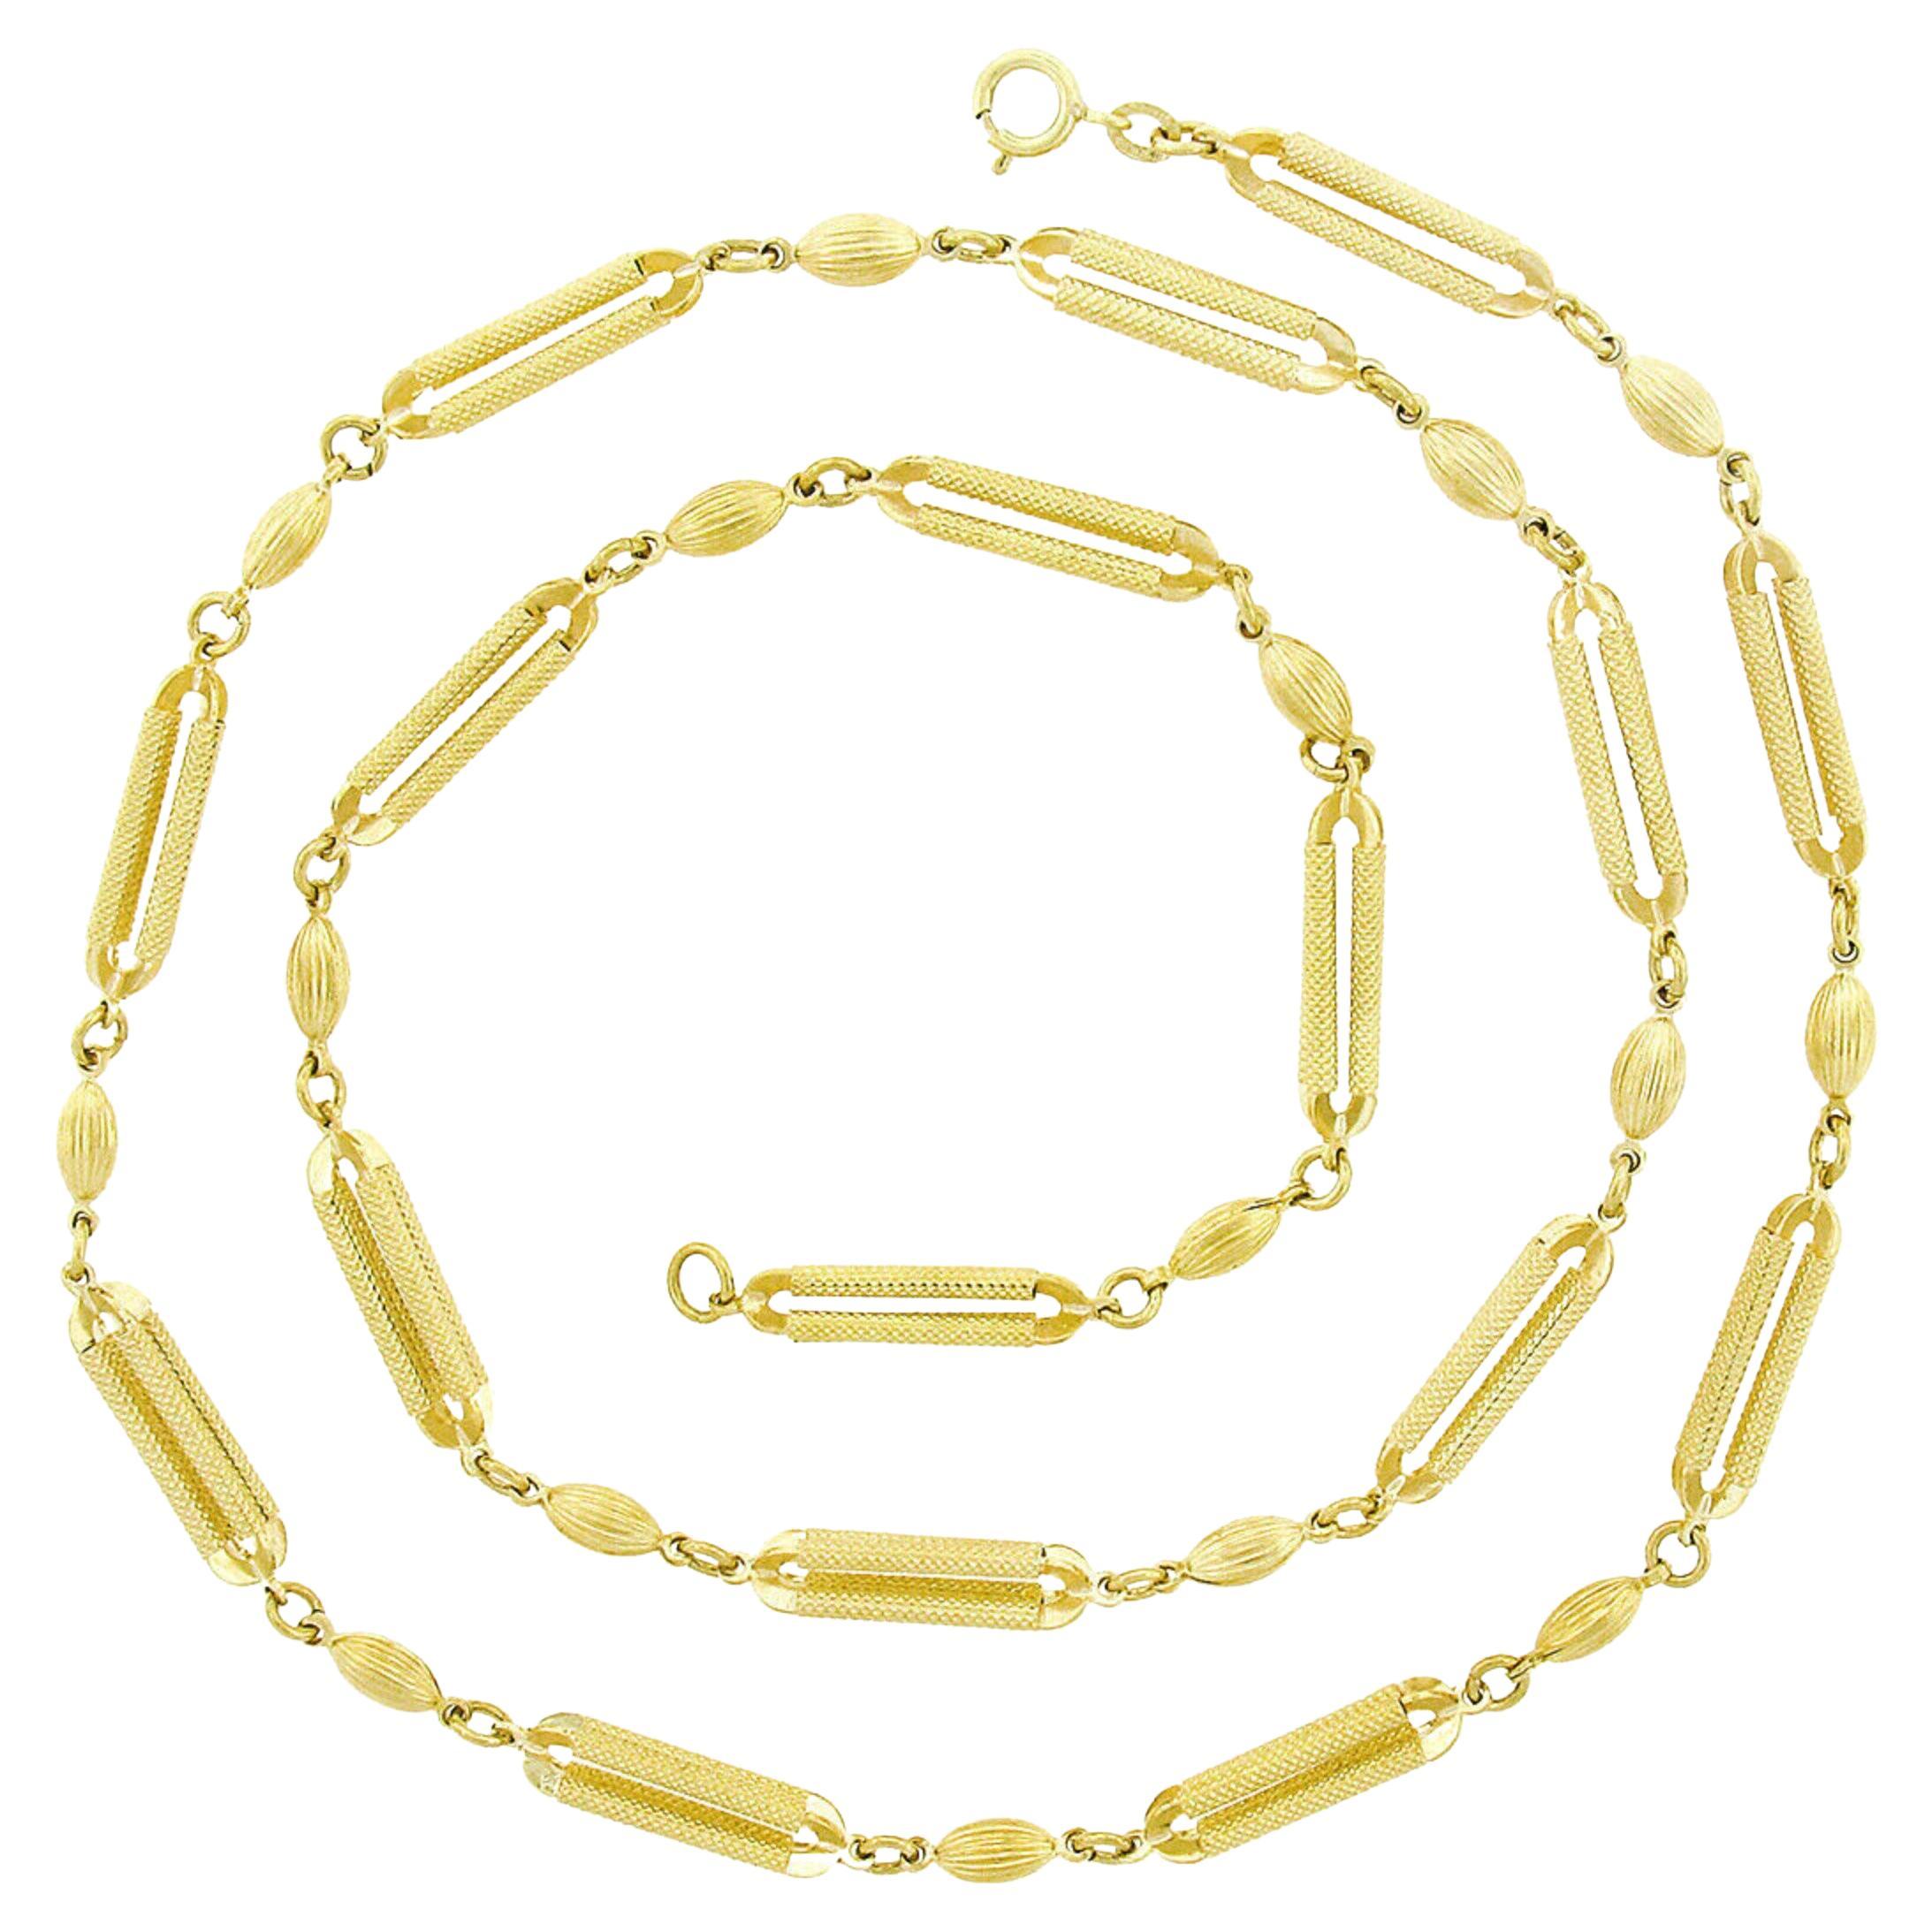 Long collier à maillons en or 14 carats texturé avec perles ovales en relief et barres ouvertes, de couleur fantaisie